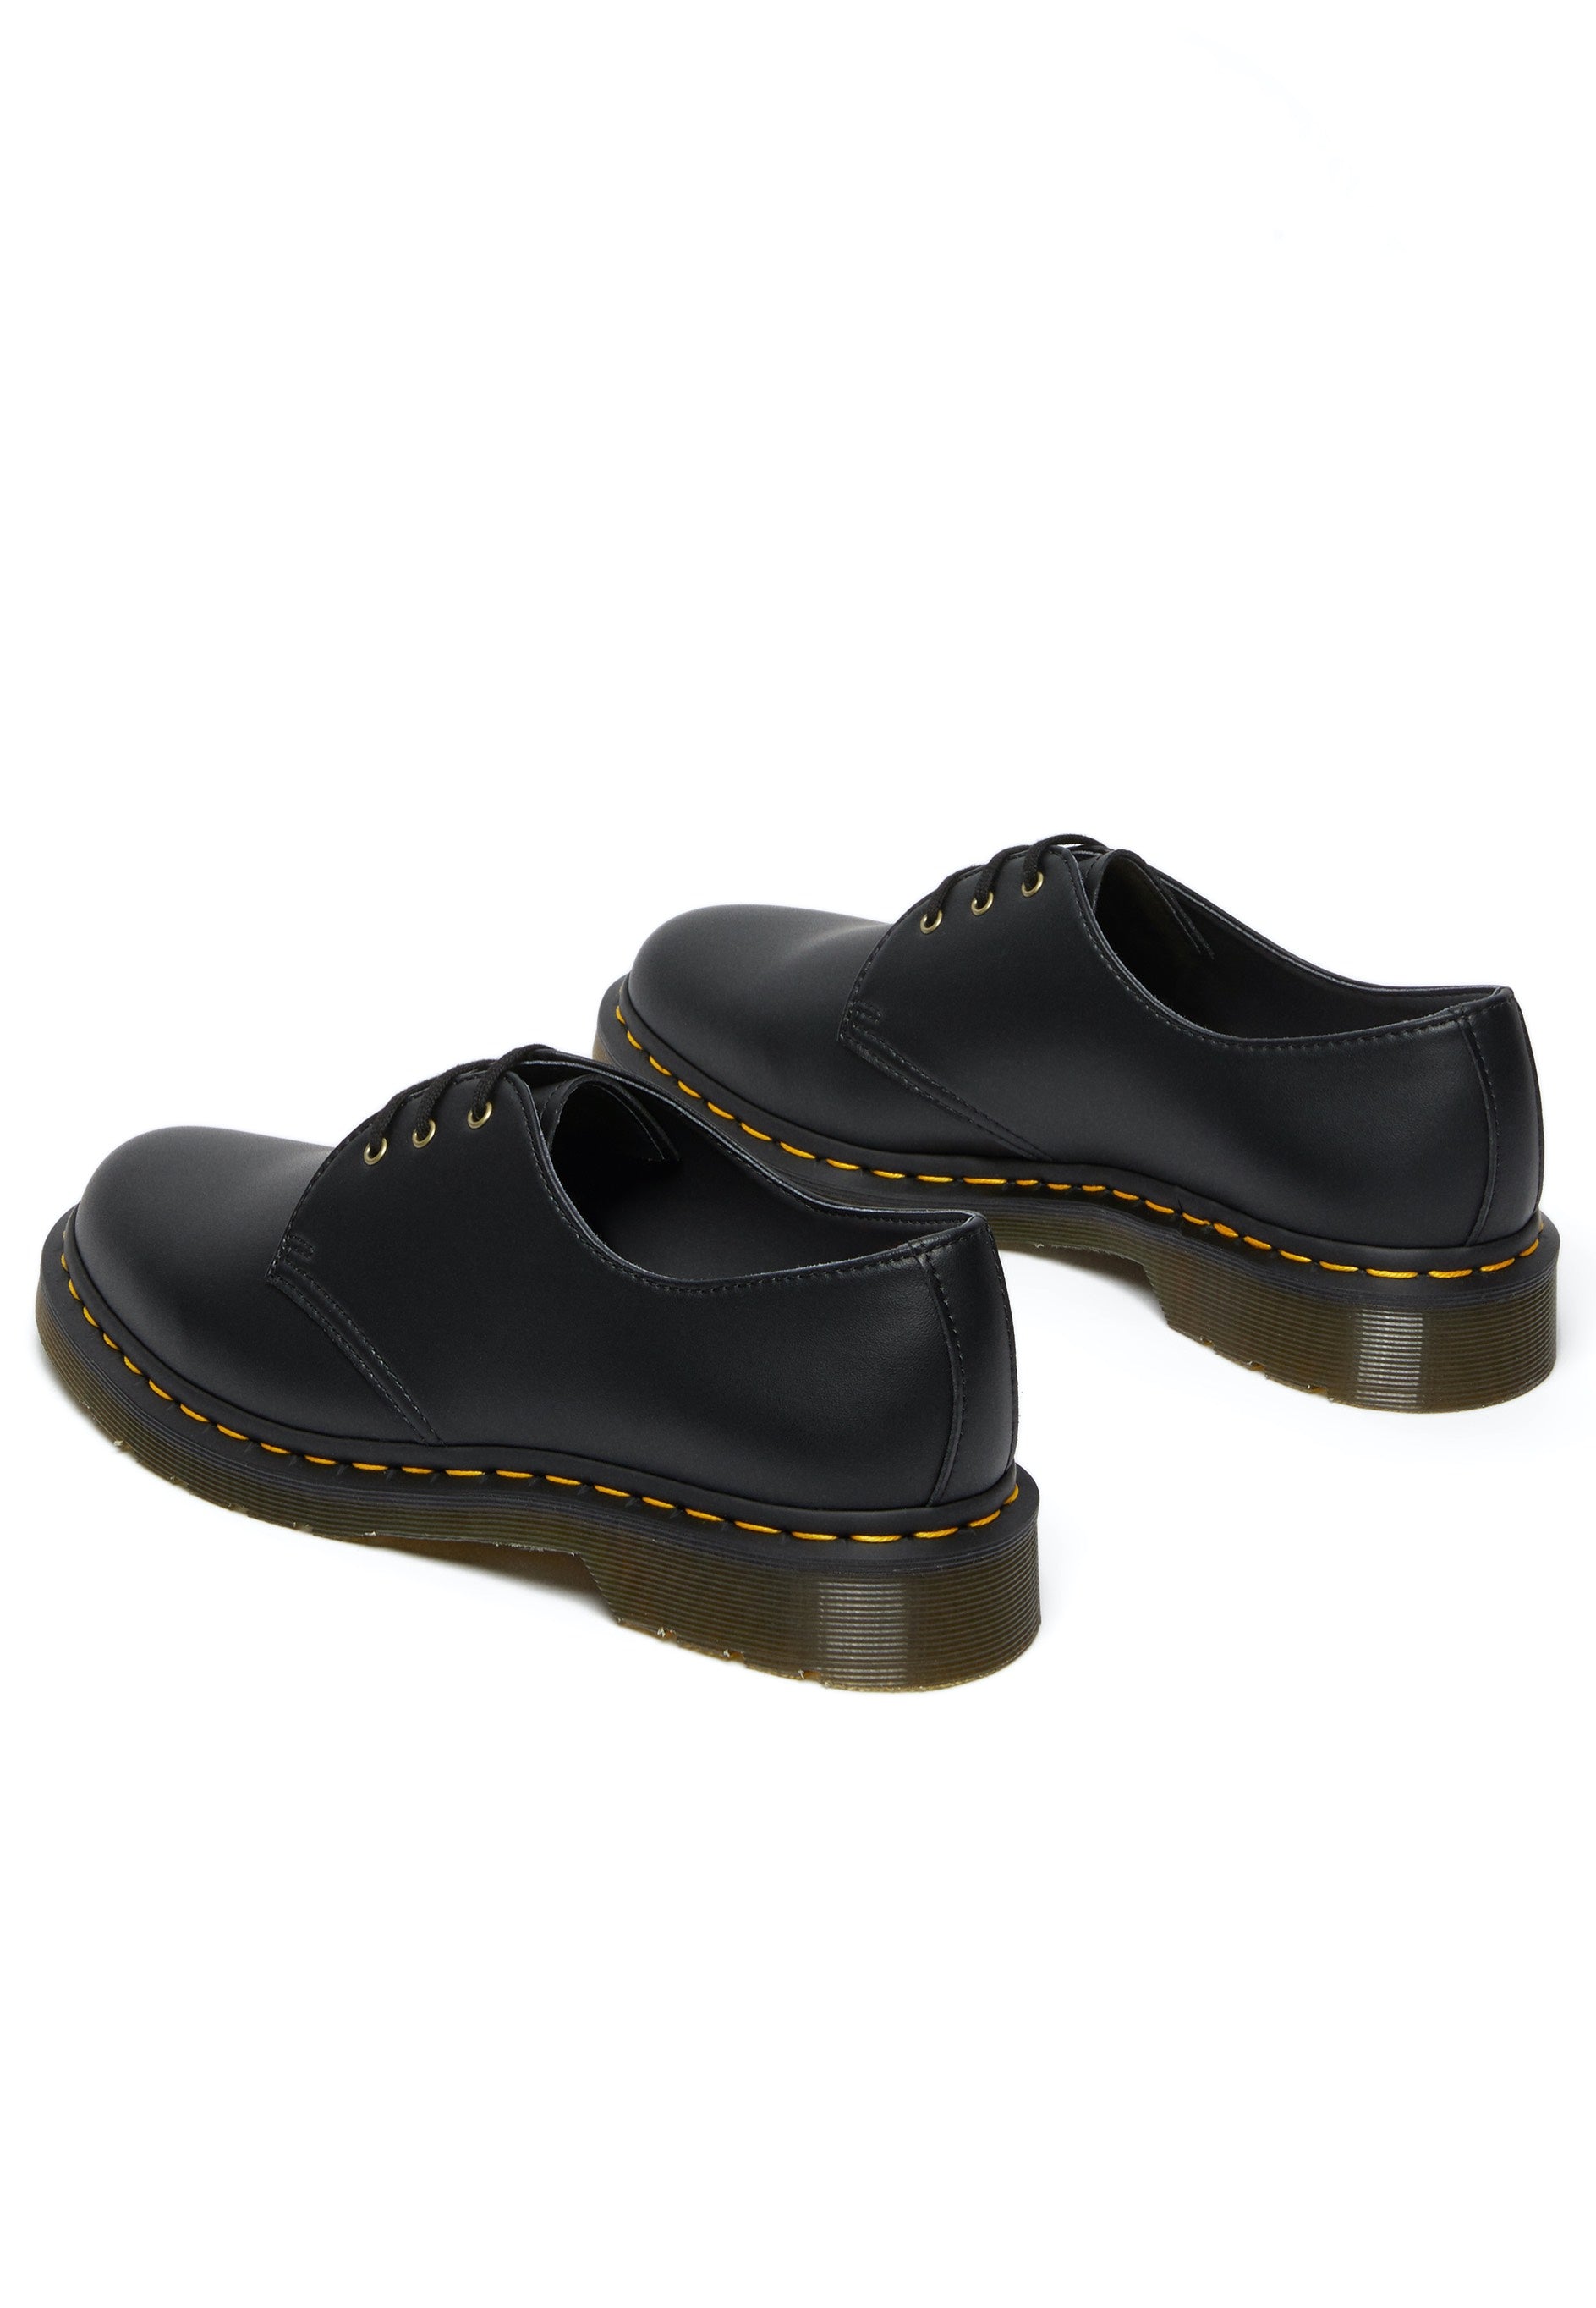 Dr. Martens - Vegan 1461 Black Felix Rub Off - Shoes